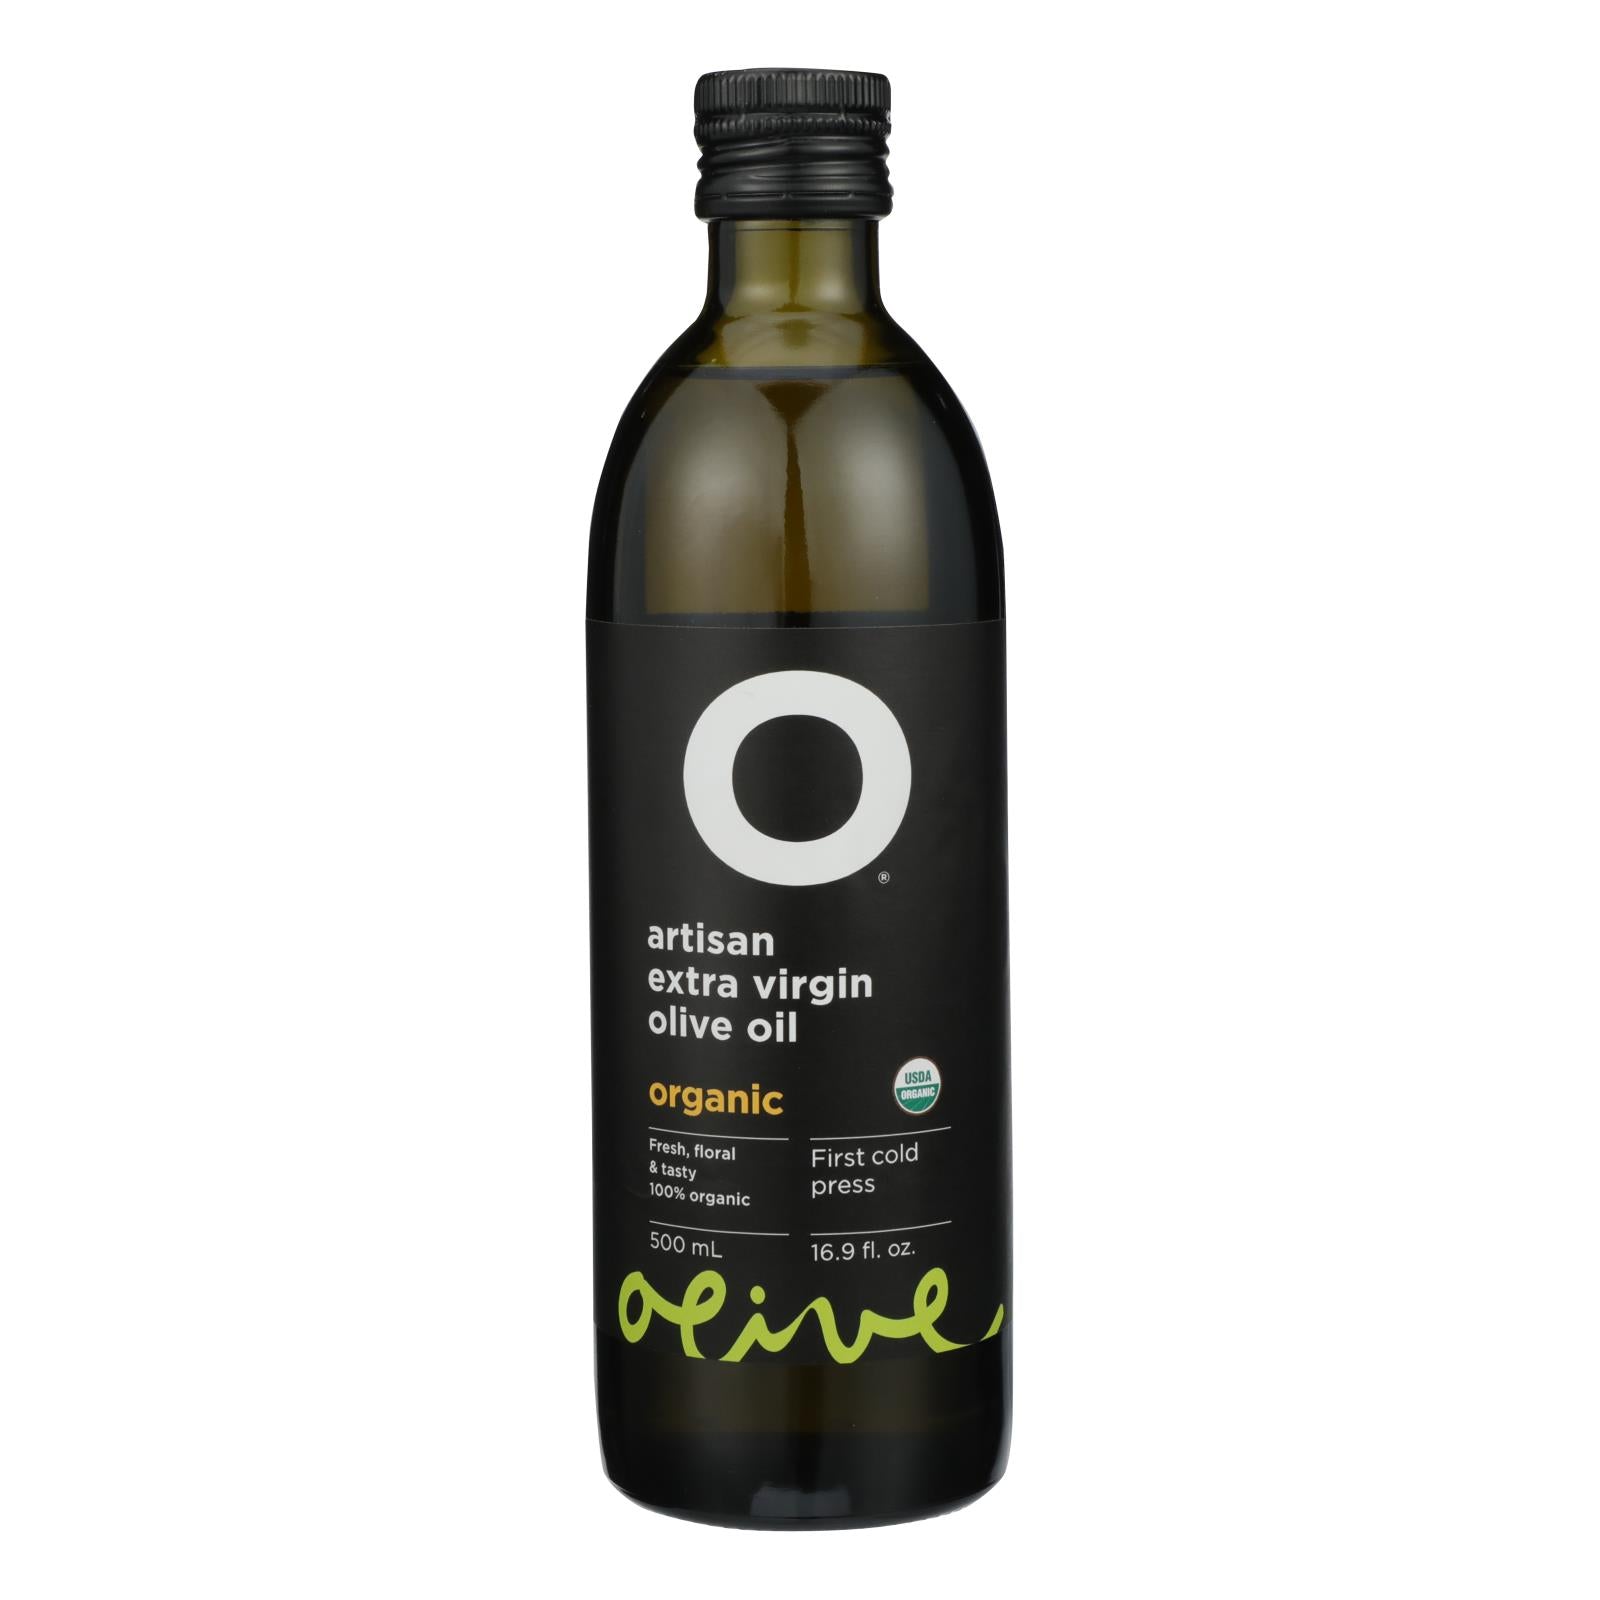 Oh aceite de oliva